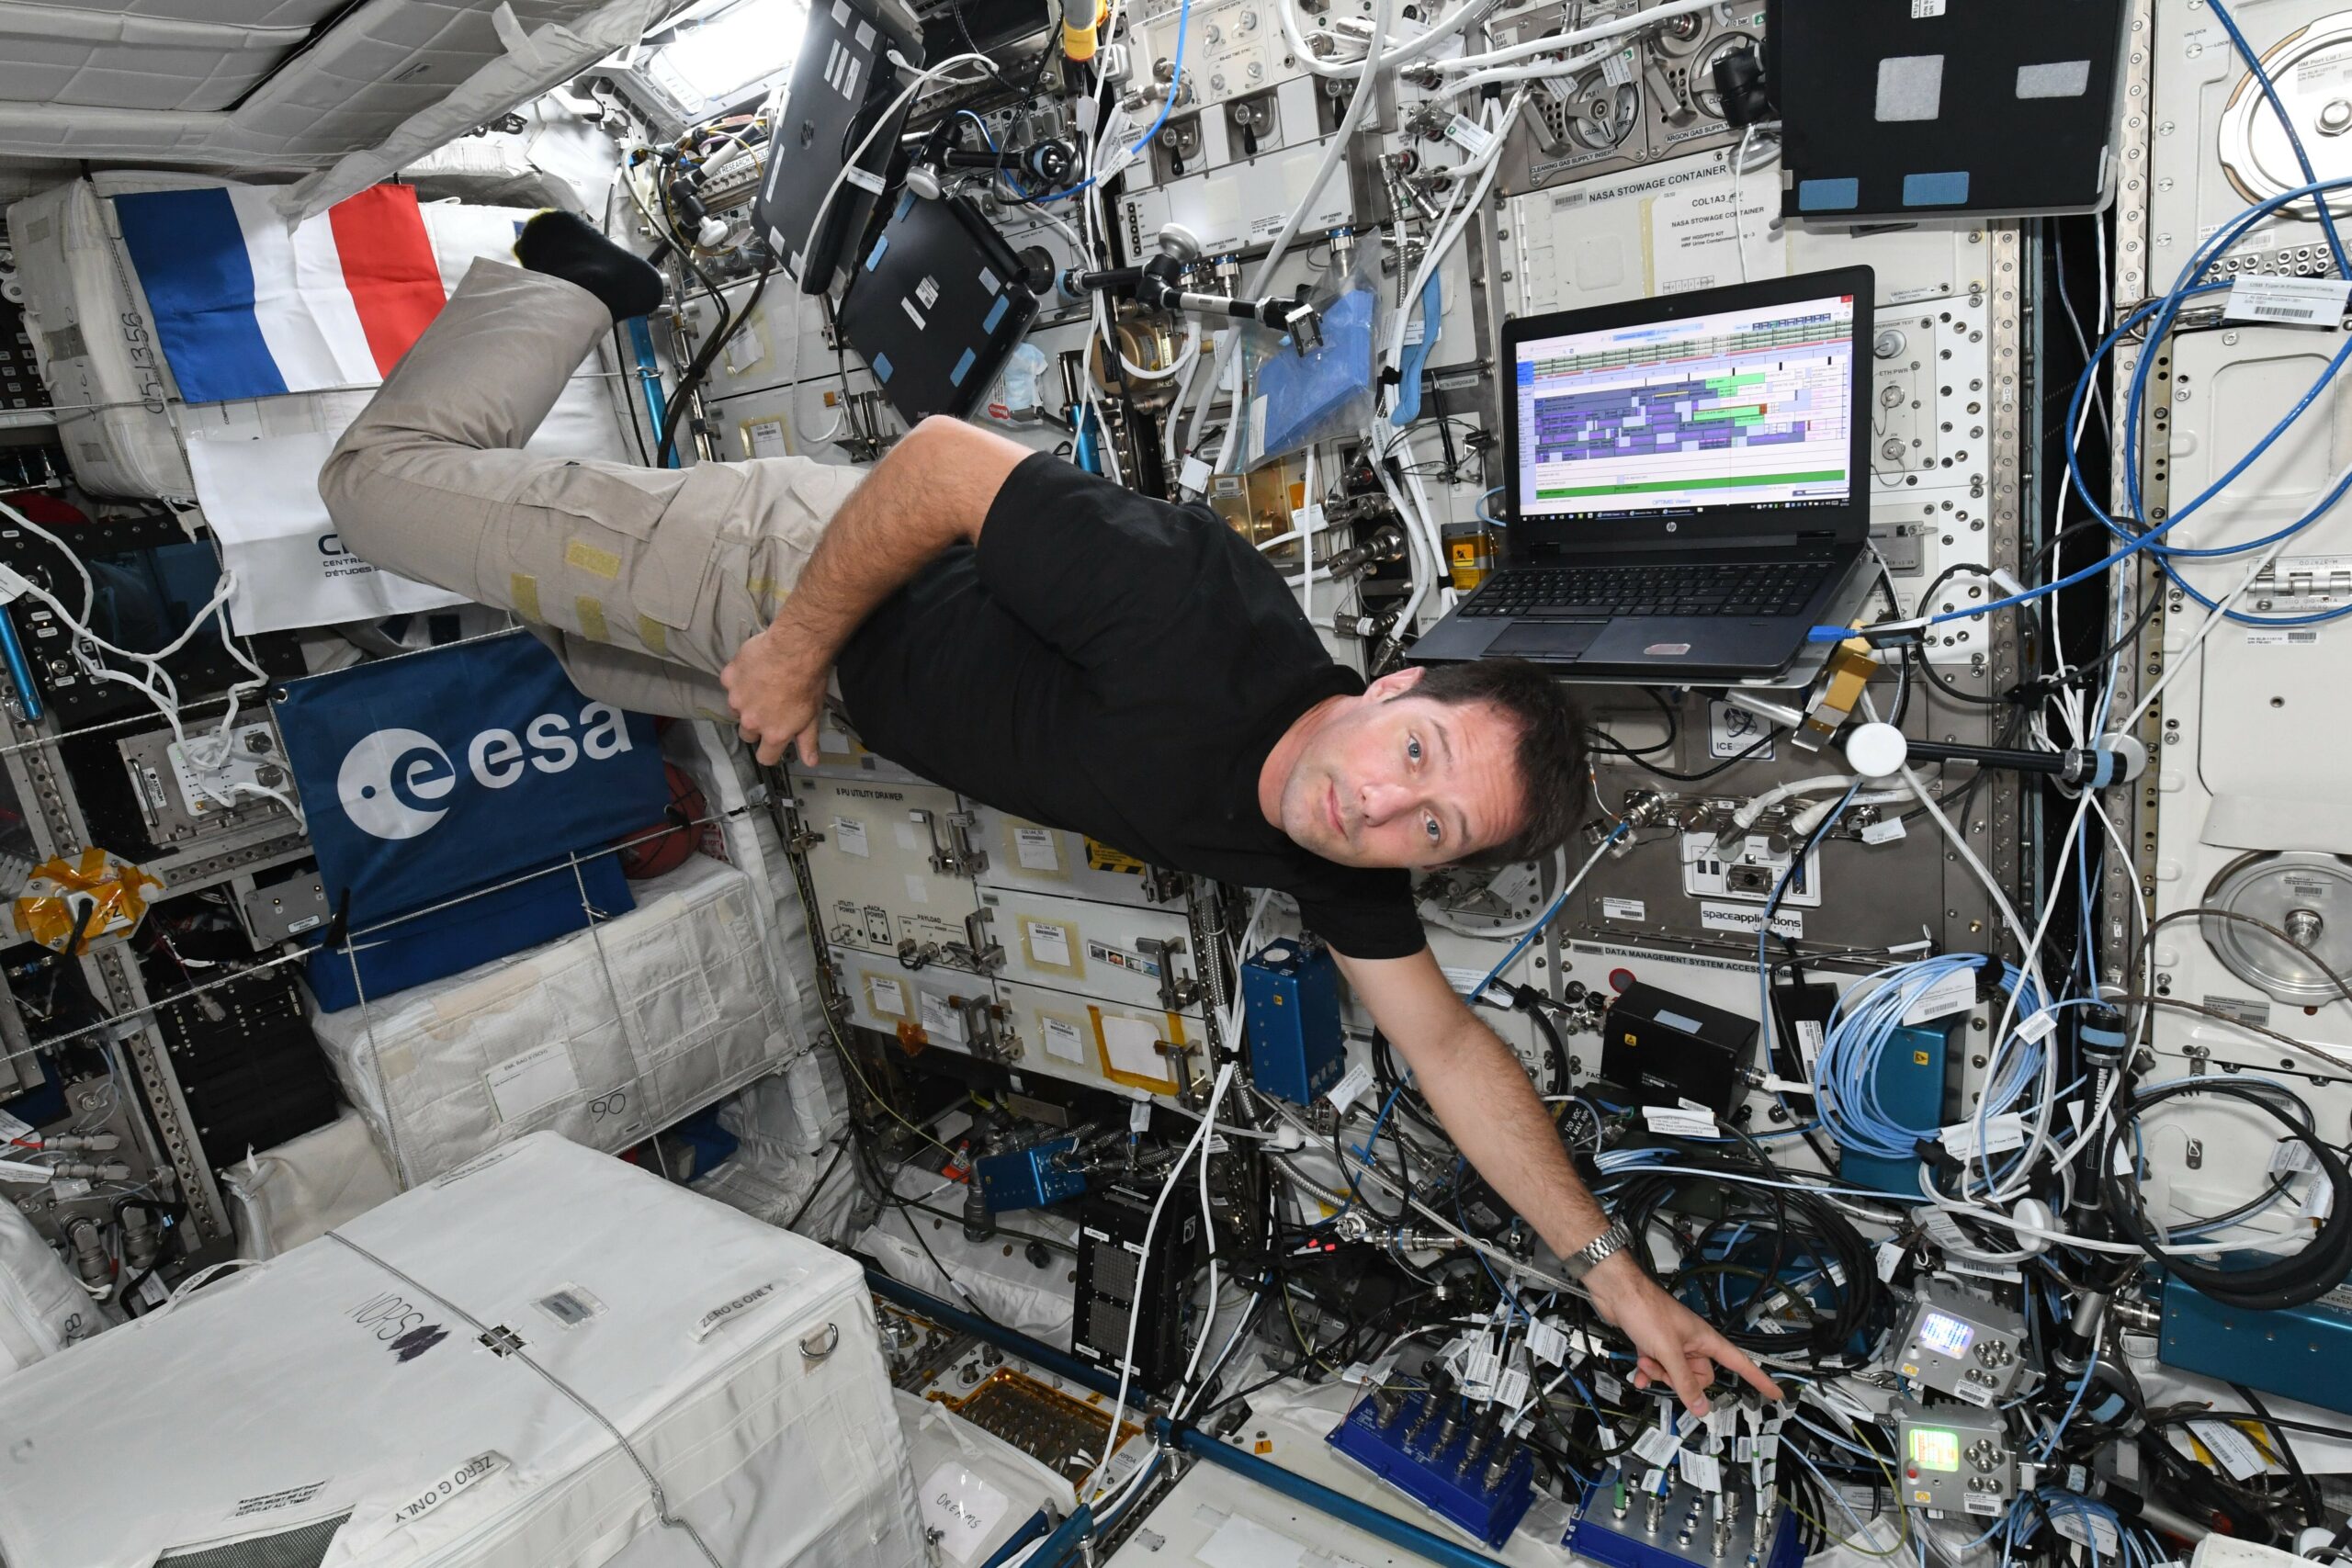 האסטרונאוט ESA, תומאס פסקט, עם מחשבי אסטרו פי על סיפון תחנת החלל הבינלאומית